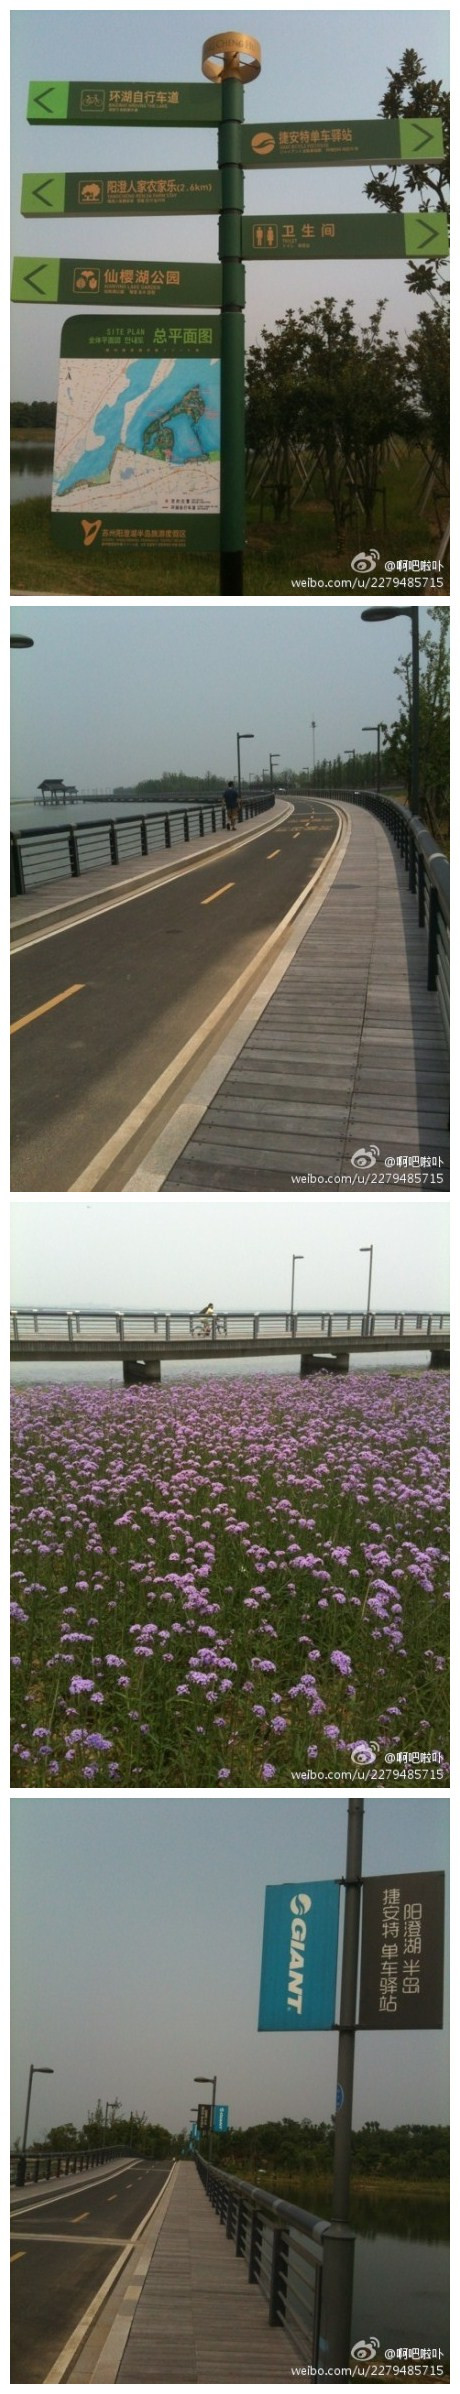 环阳澄湖自行车道长约18公里左右@